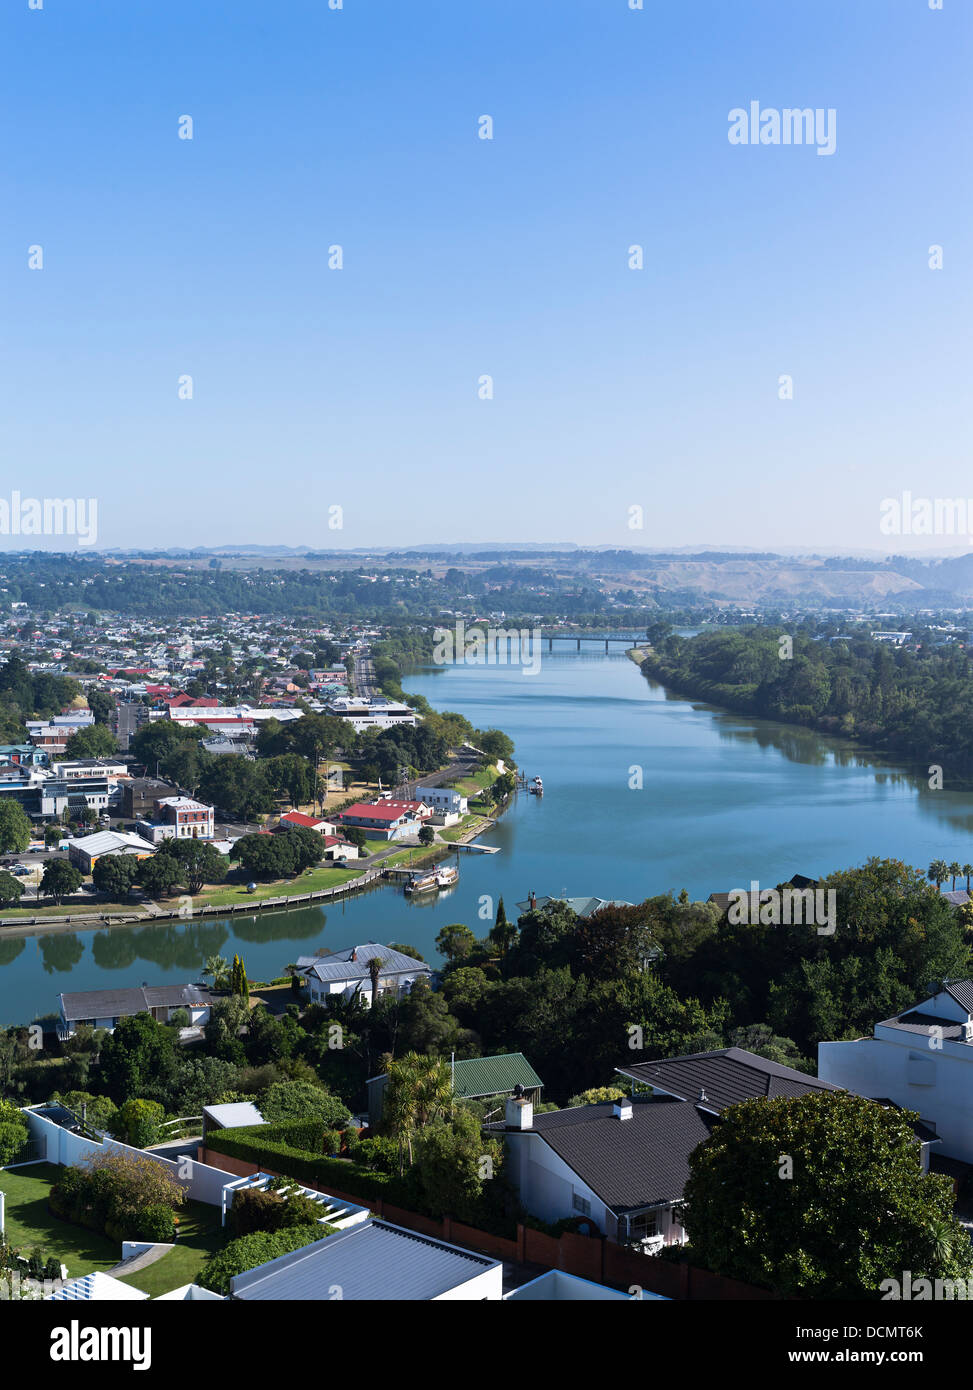 La rivière Whanganui dh NEW ZEALAND WANGANUI Durie Hill vue ville et vue sur la rivière Banque D'Images